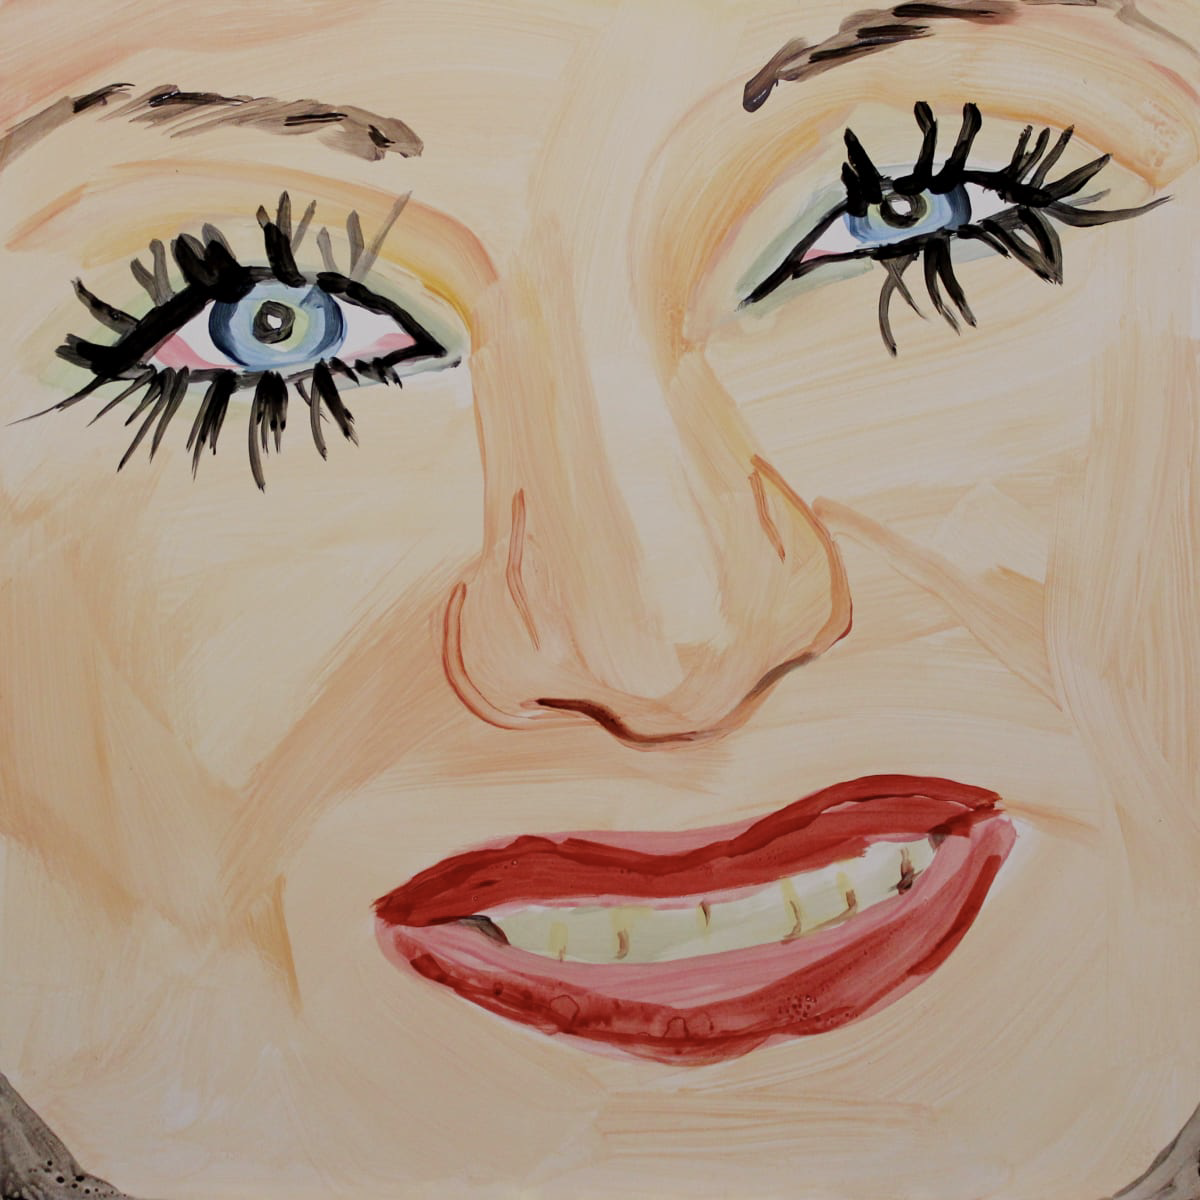 Laura Collins, Tammy Faye Bakker no. 1, 2022, acrylic on panel, 16” x 16”